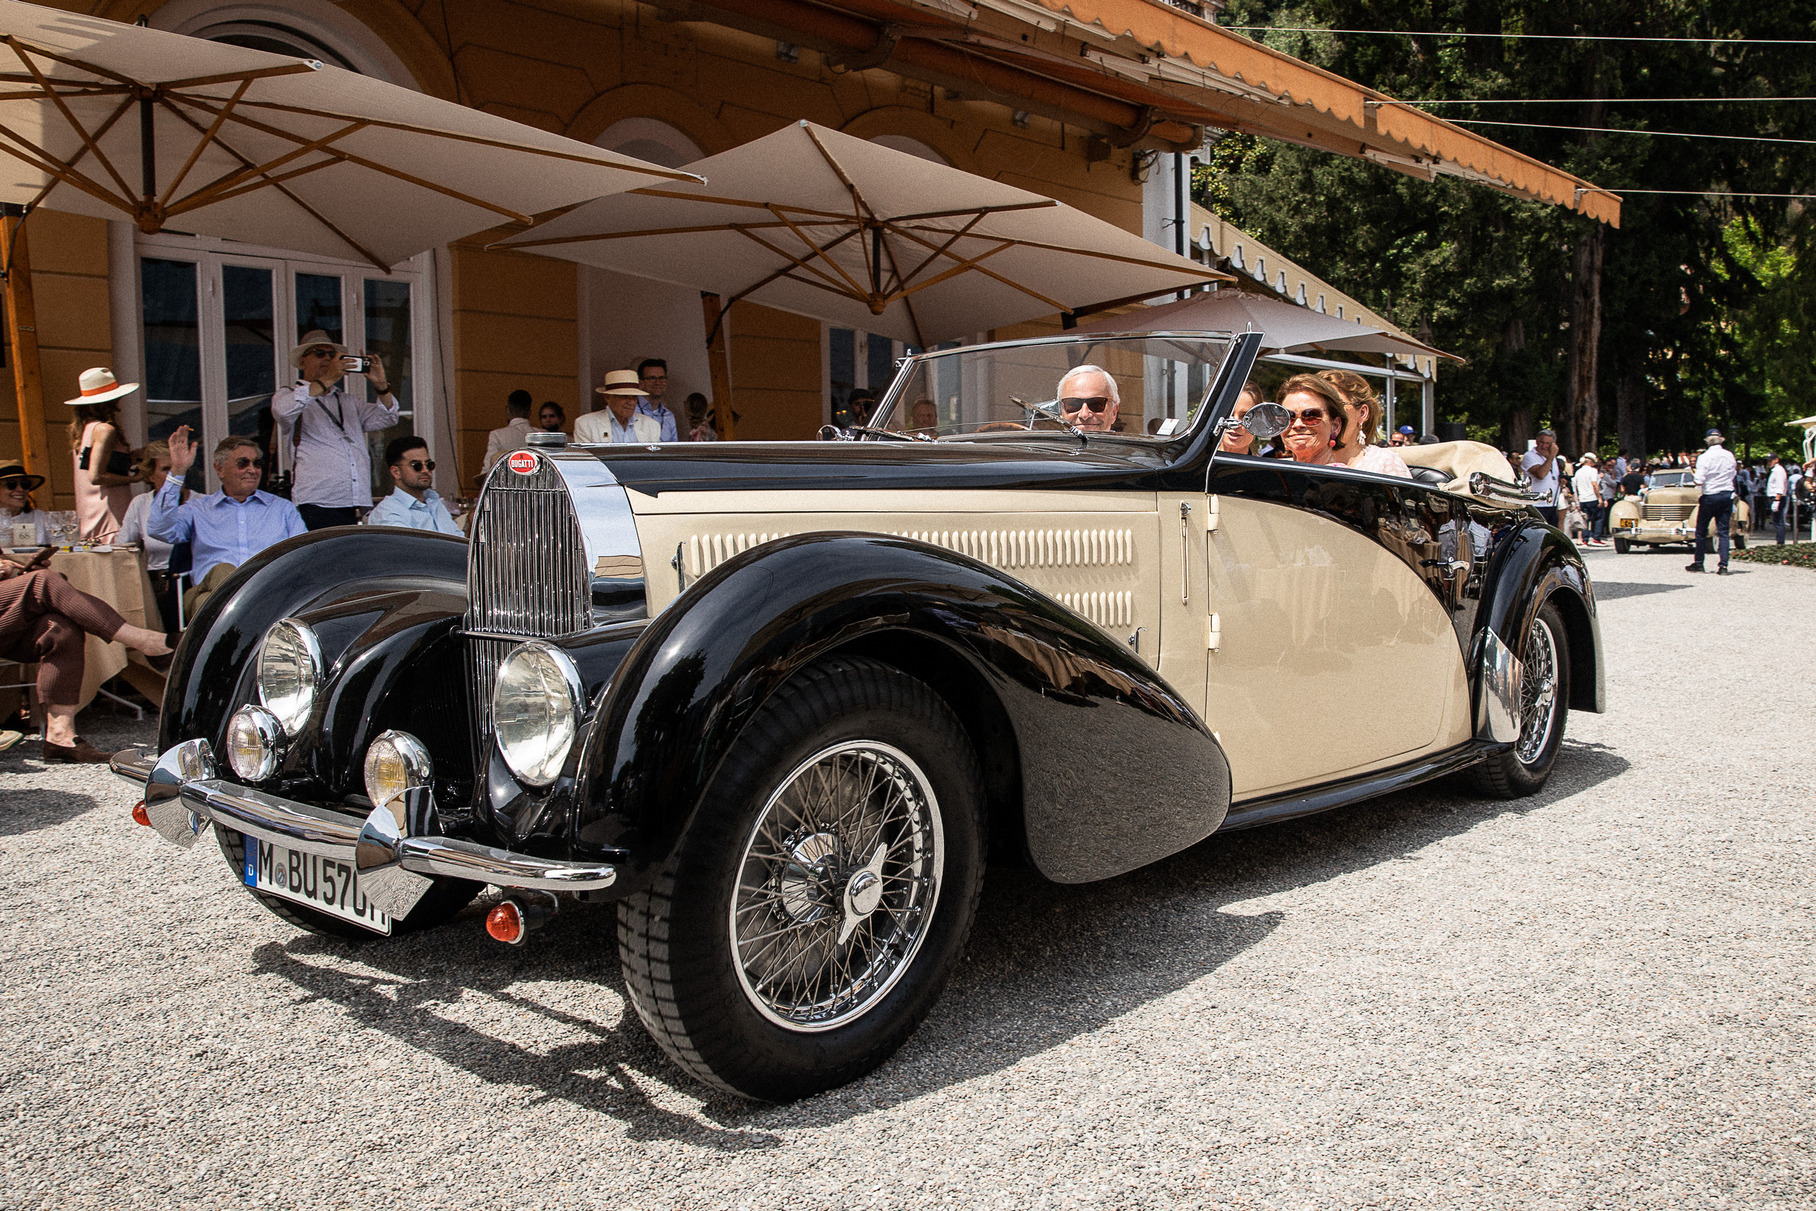 Данный Bugatti Type 57 С Stelvio считается первой товарной машиной этой модели, уже с завода получившей двигатель с наддувом. Рядная «восьмёрка» 3.3 с компрессором Roots развивала около 160 лошадиных сил. Изготовленное в 1936 году шасси было отправлено в ателье Gangloff, где и получило элегантный четырёхместный кузов «кабриолет». В наше время автомобиль прошёл тщательную реставрацию, которая заняла четыре года. Сейчас Bugatti прописан в Германии и принадлежит профессору Биагош из Мюнхенского технического университета.